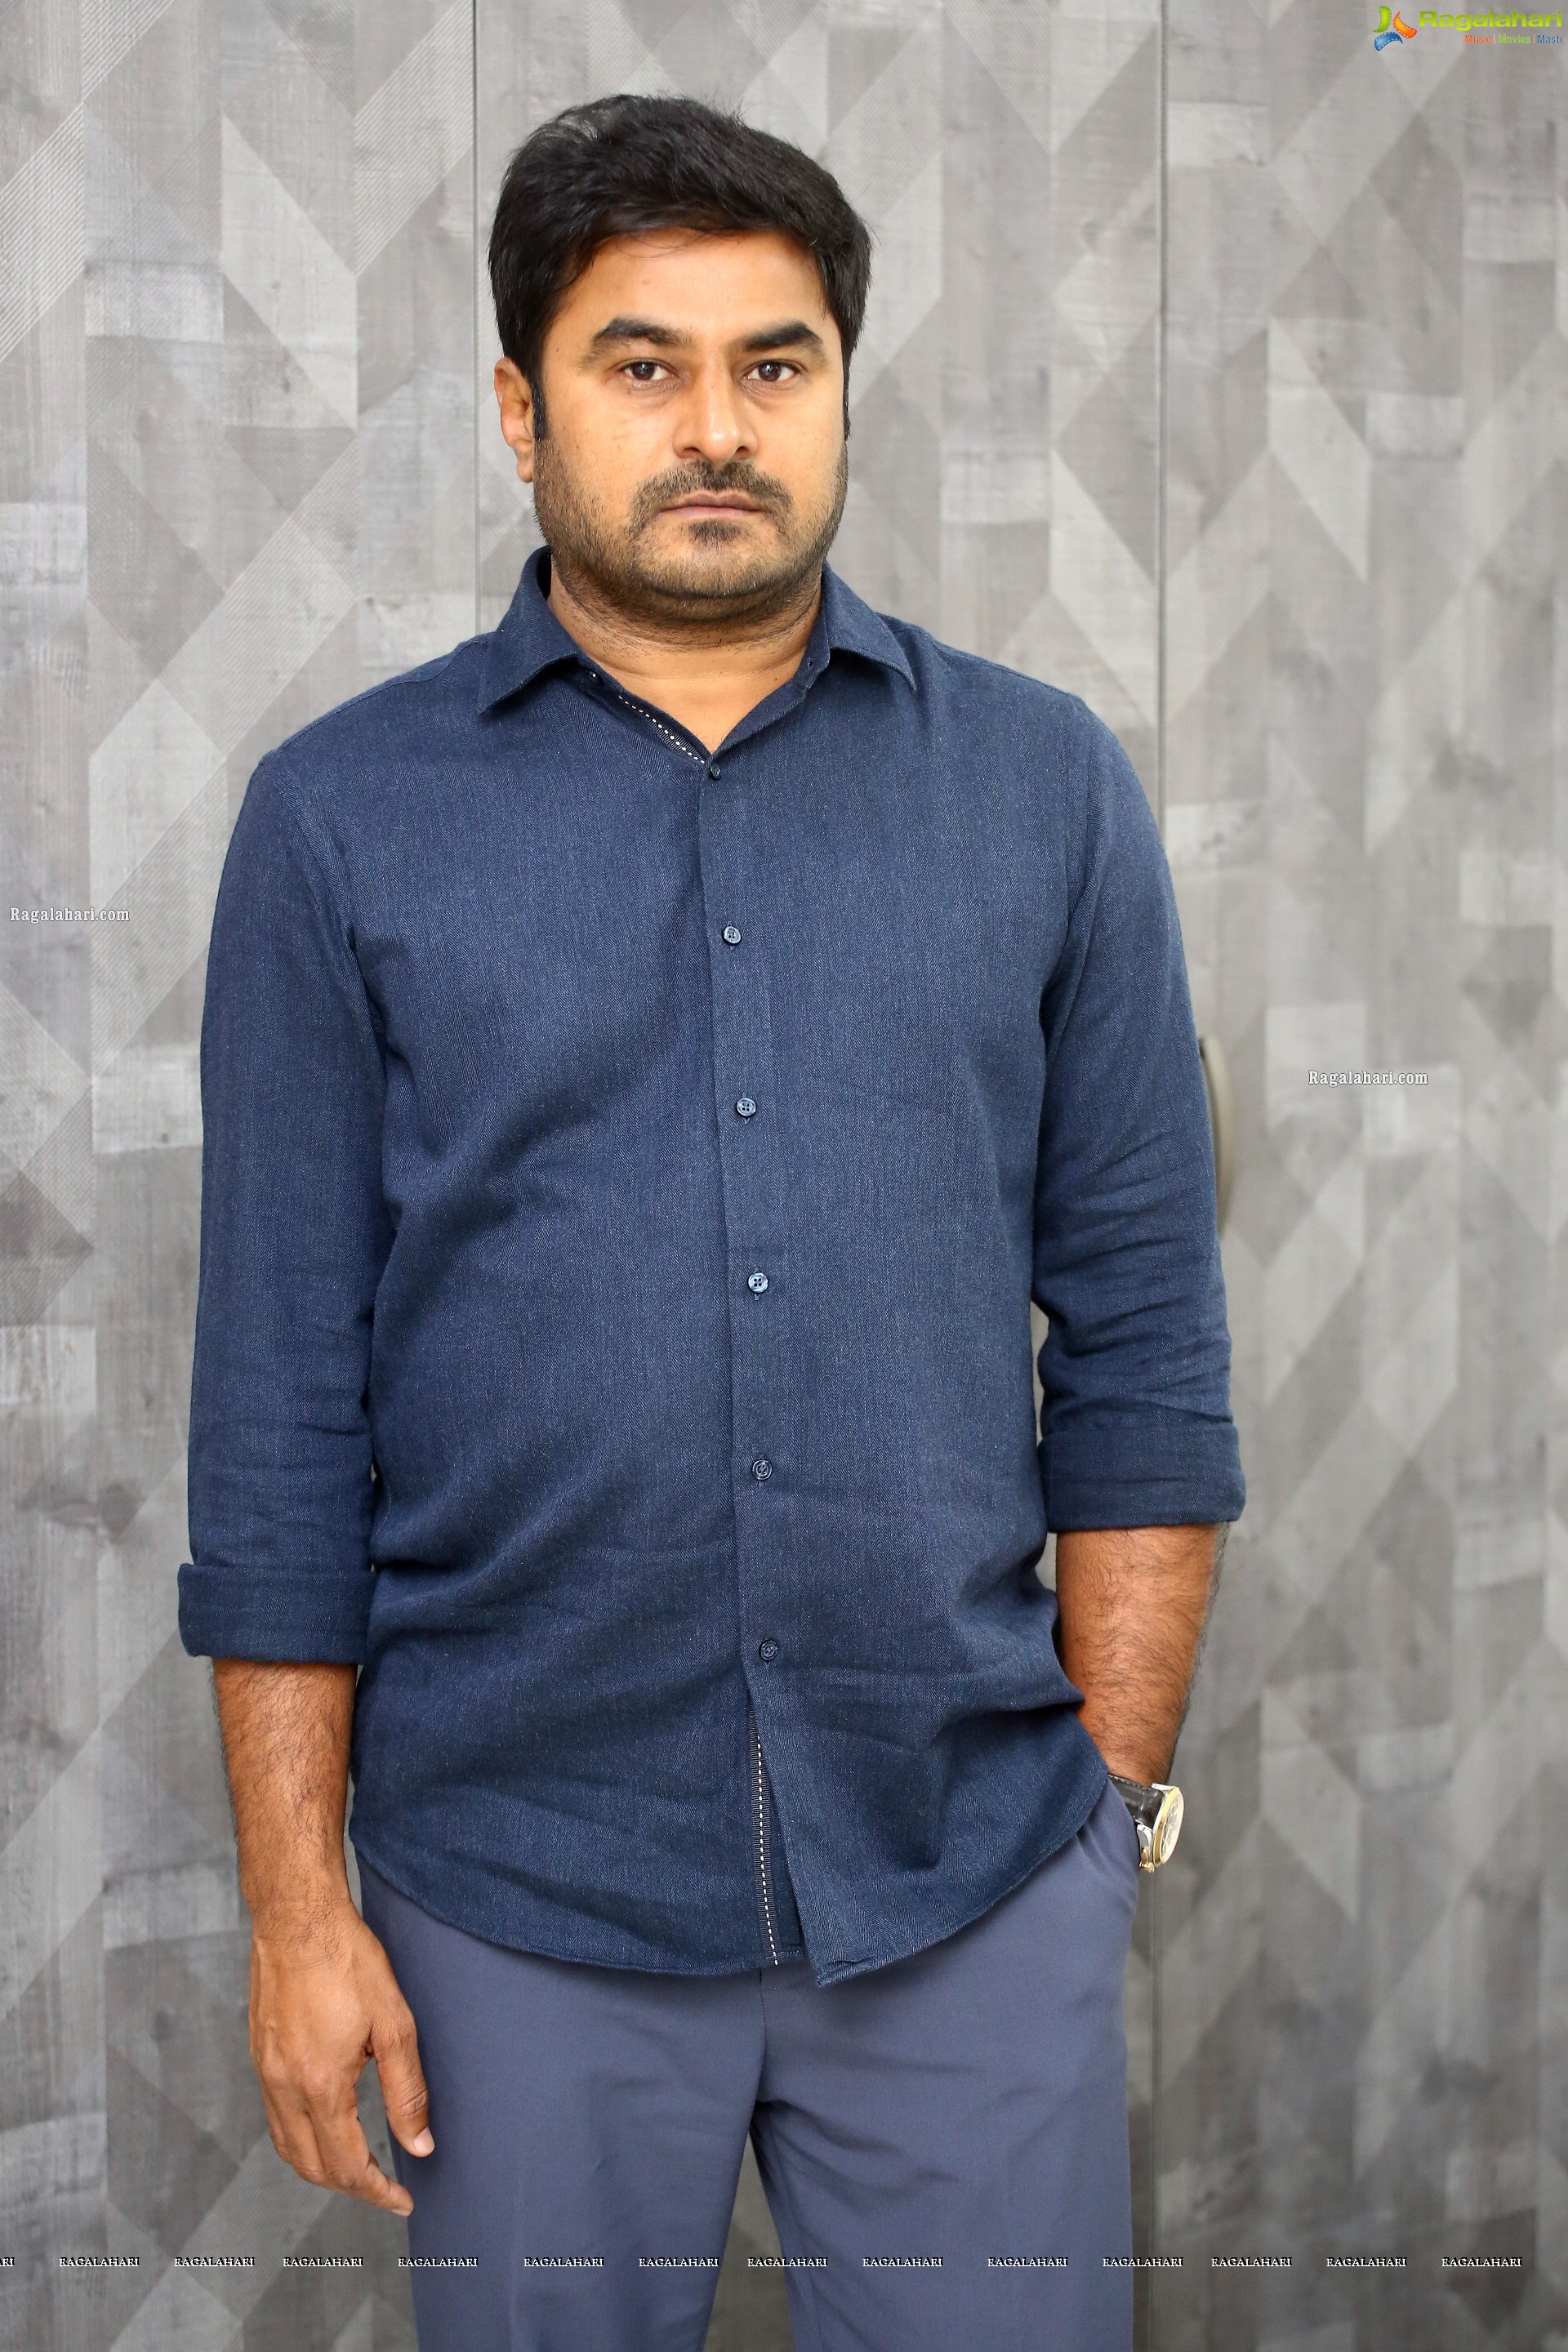 Producer Sudhakar Cherukuri at Aadavaallu Meeku Johaarlu Interview